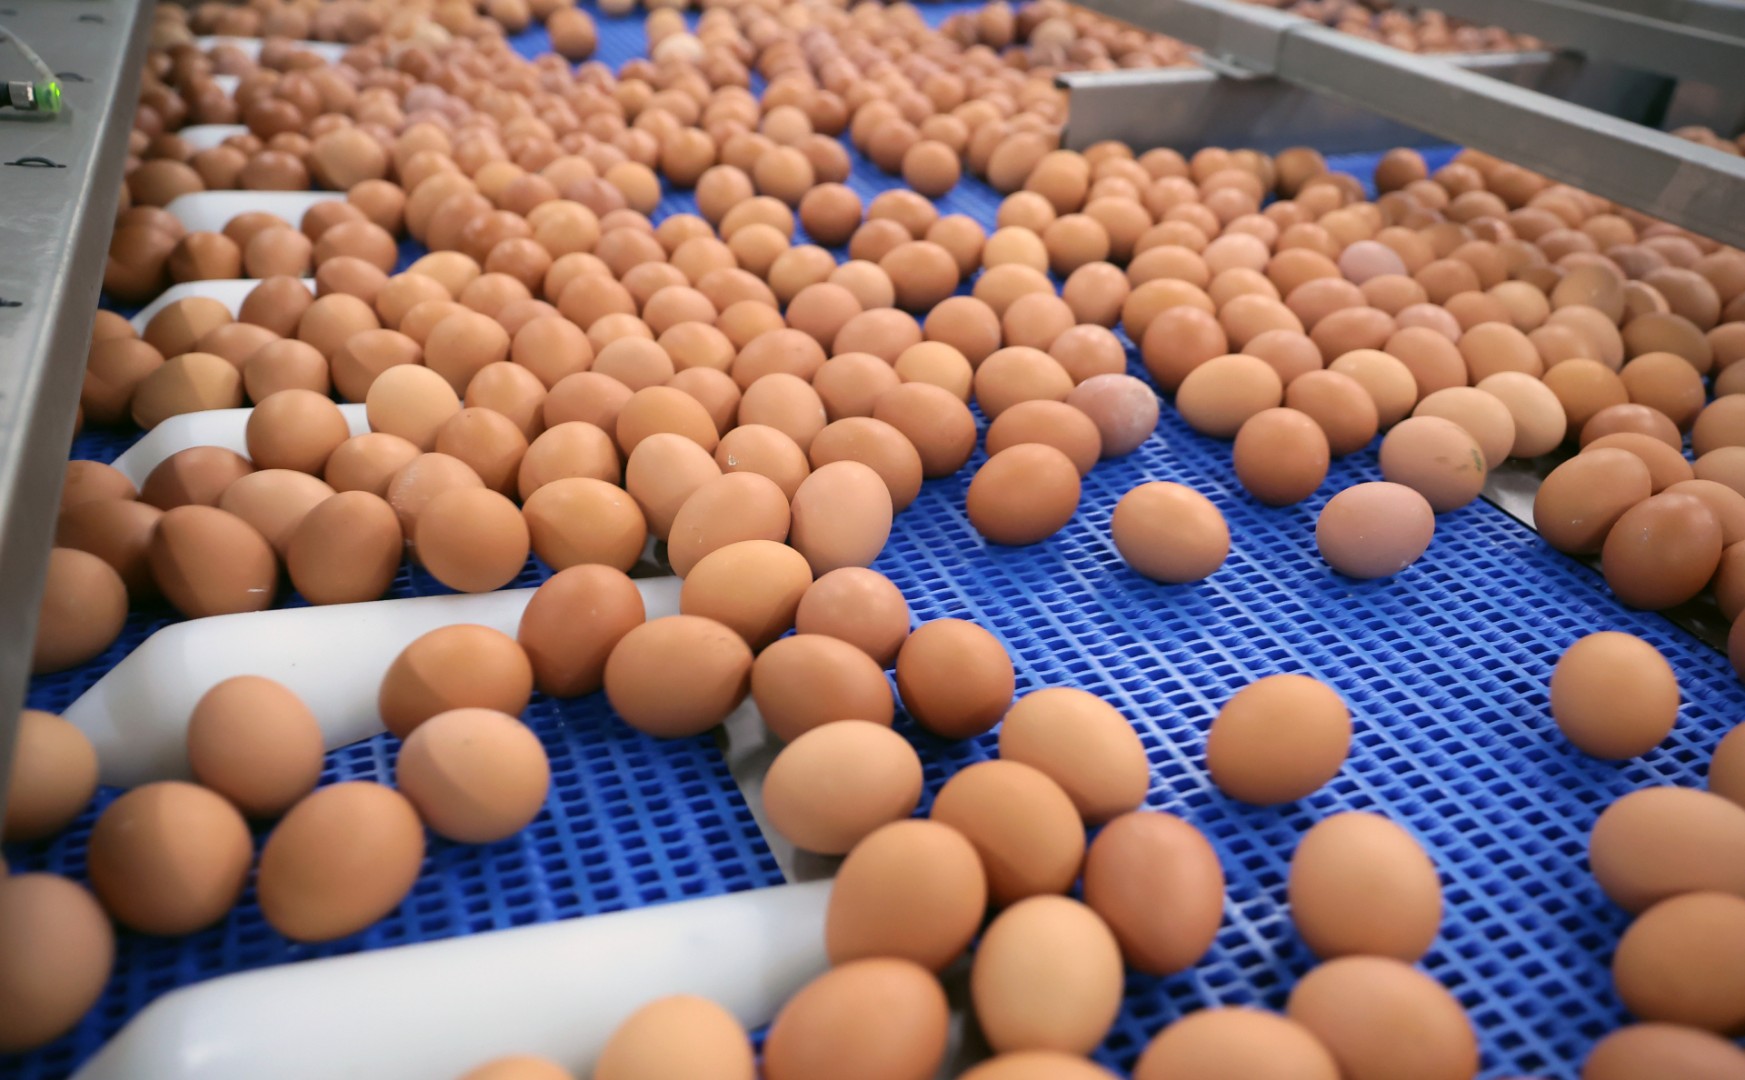 Управление сельского хозяйства Липецкой области договорилось с производителем о предельной цене на яйца